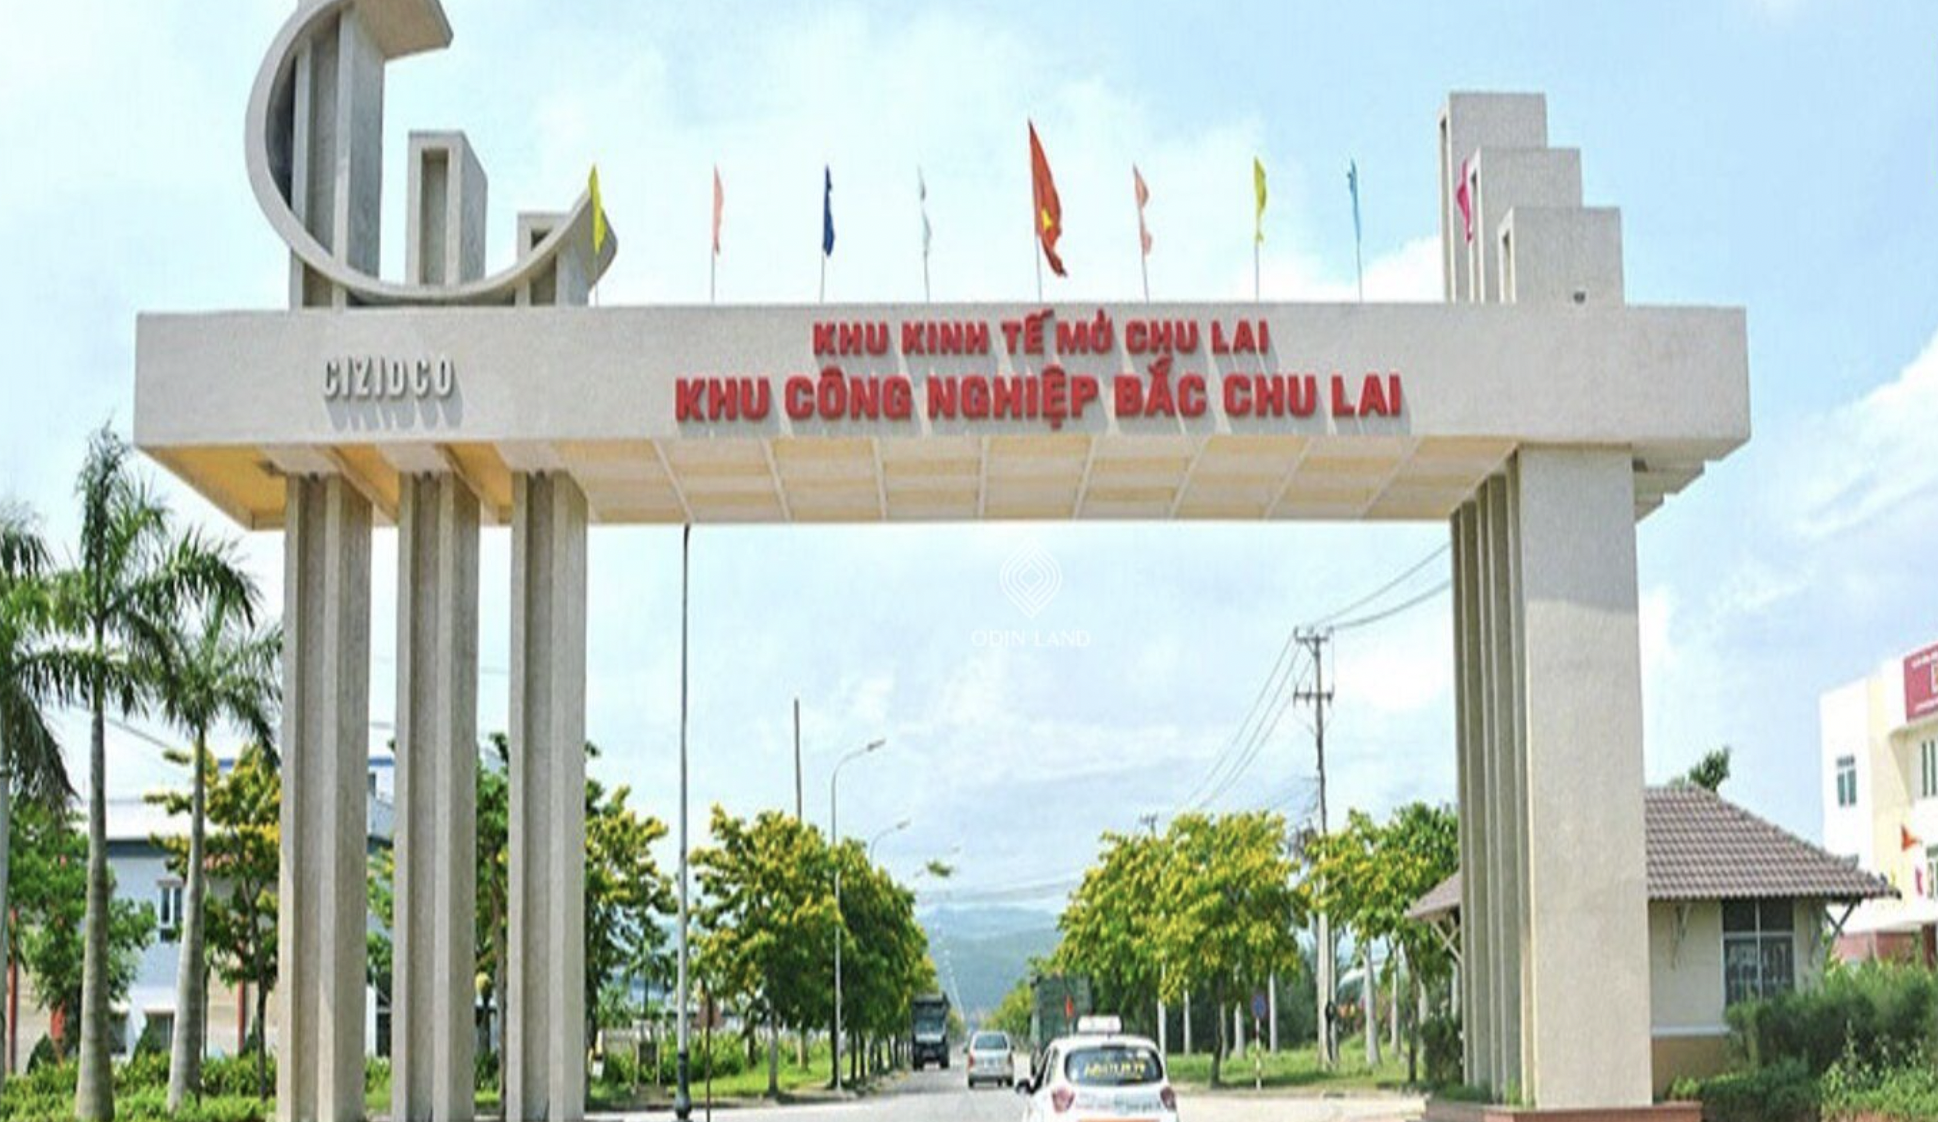 Khu công nghiệp Bắc Chu Lai